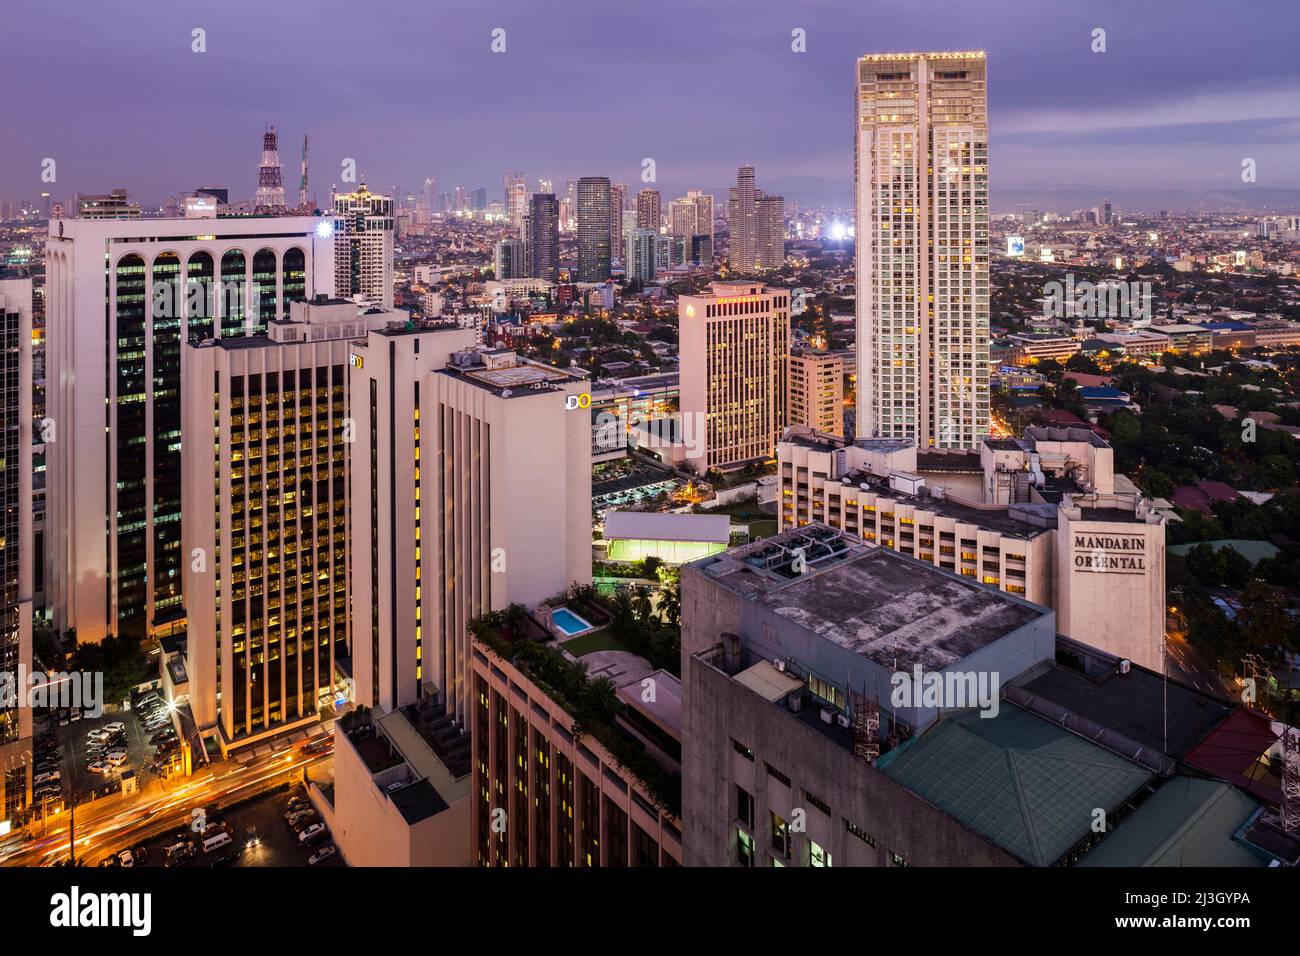 Philippines, Metro Manila, Makati District, vue imprenable sur les gratte-ciels et l'hôtel Mandarin Oriental au crépuscule Banque D'Images